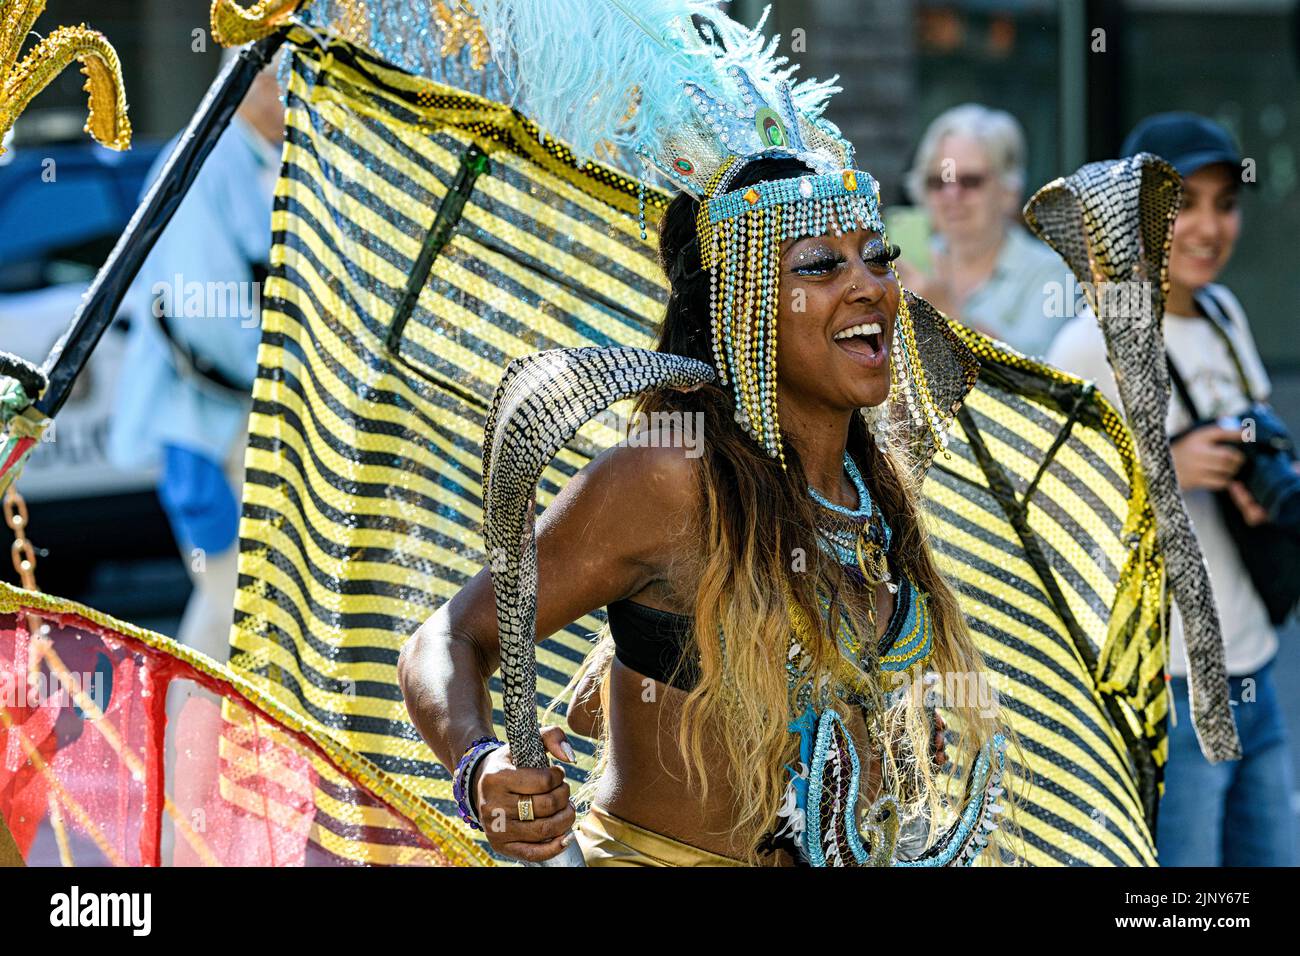 Carifest Calgary ist ein jährliches Kulturfestival und eine Parade, bei der die reiche kulturelle Vielfalt der westindischen Inseln hervorgehoben wird. Tragen Sie ein Augenkostüm Stockfoto